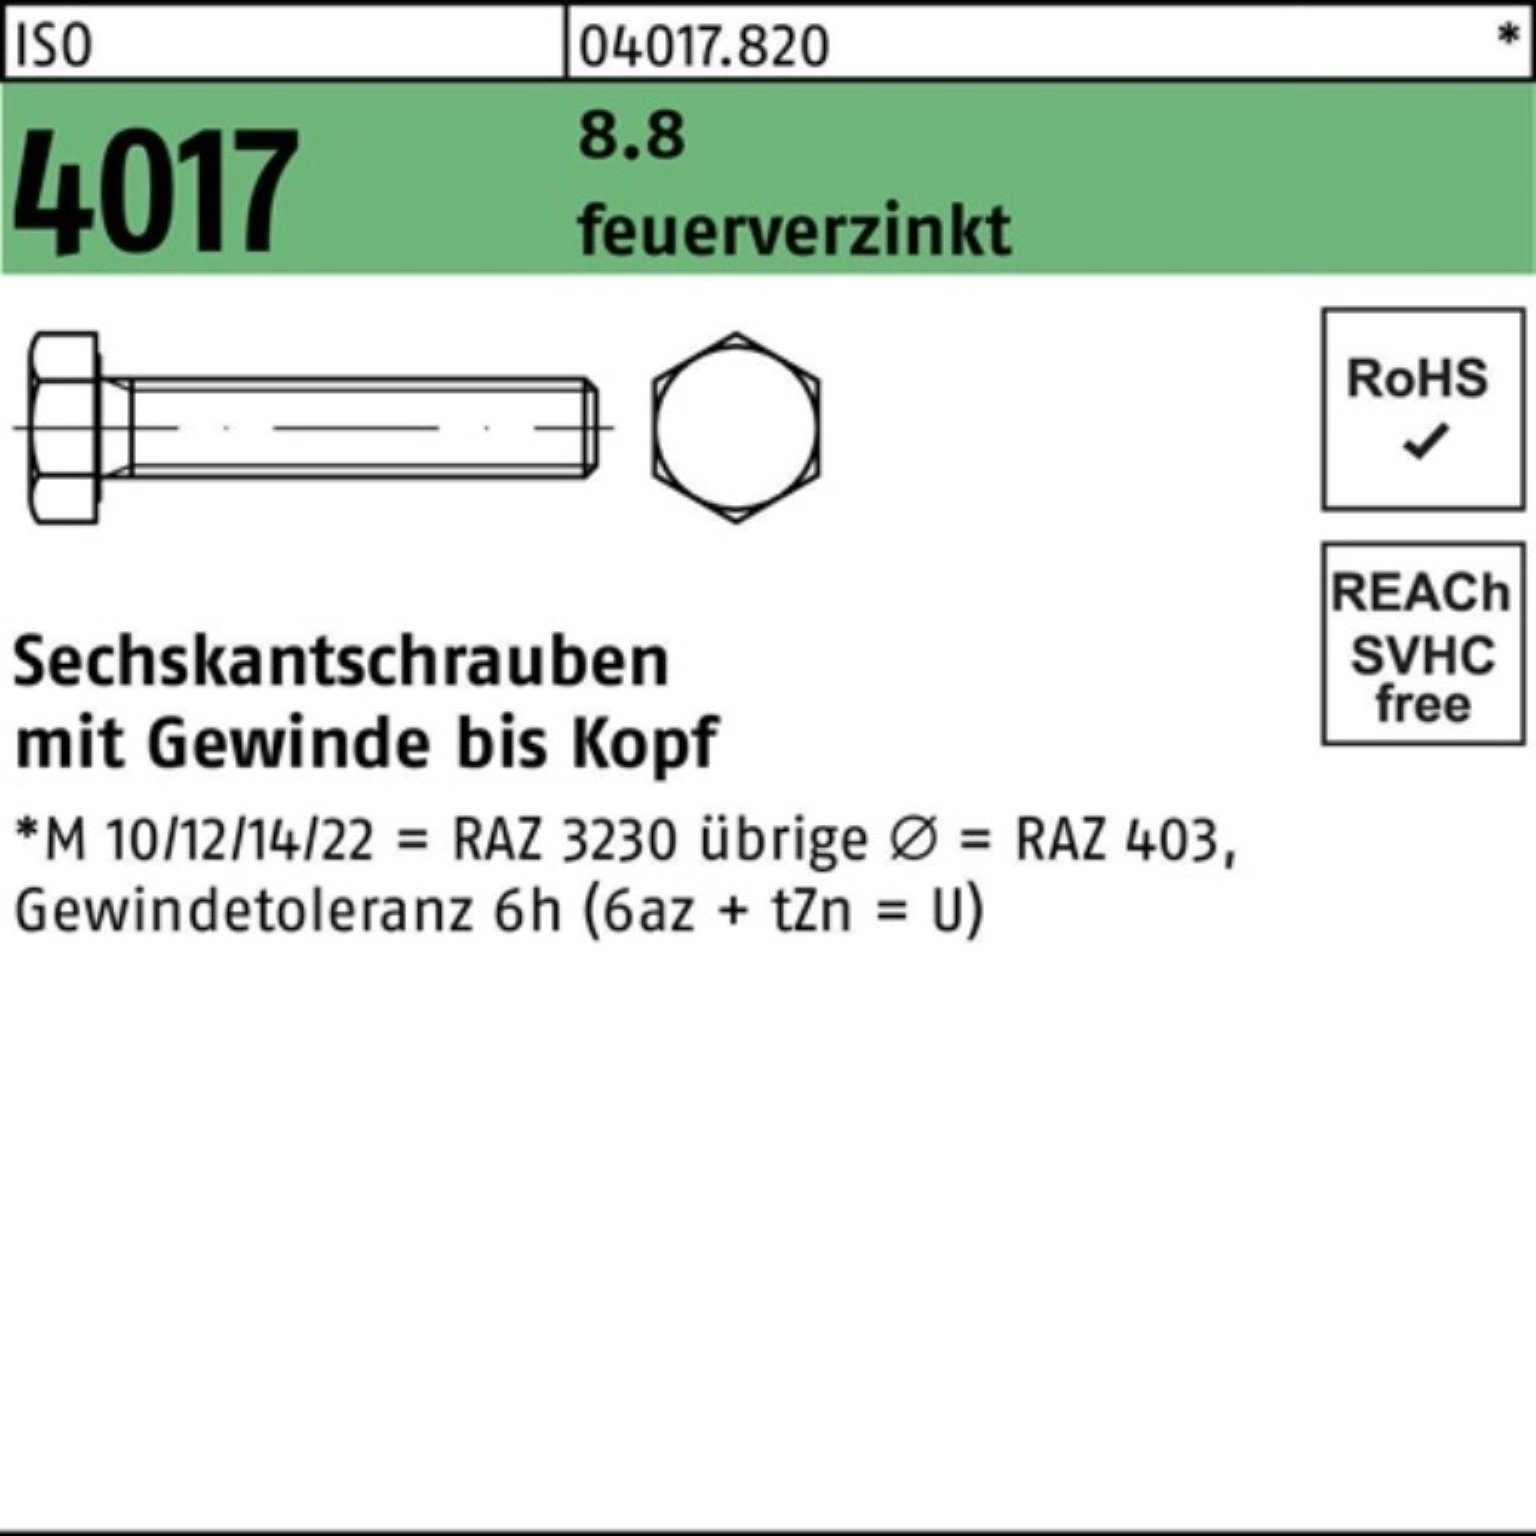 Pack ISO Bufab Sechskantschraube St VG 4017 20 Sechskantschraube M12x 8.8 100er 100 feuerverz.